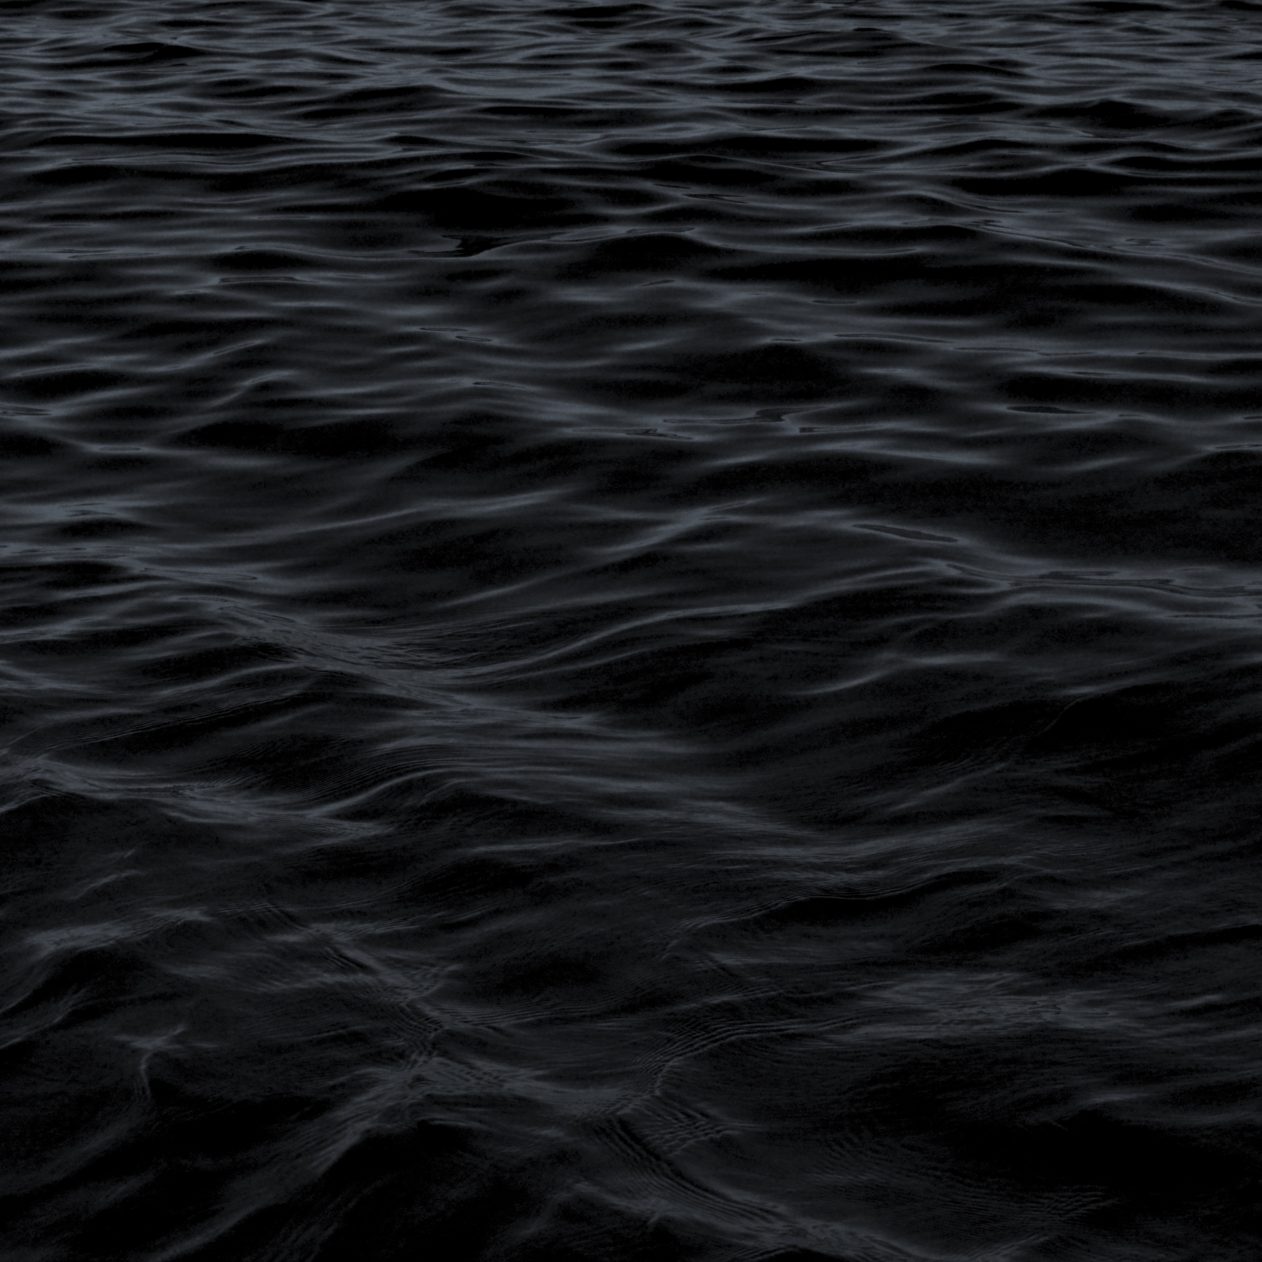 1262x1262 Parallax wallpaper 4k Dark Water Waves Sea Pattern iPad Wallpaper 1262x1262 pixels resolution